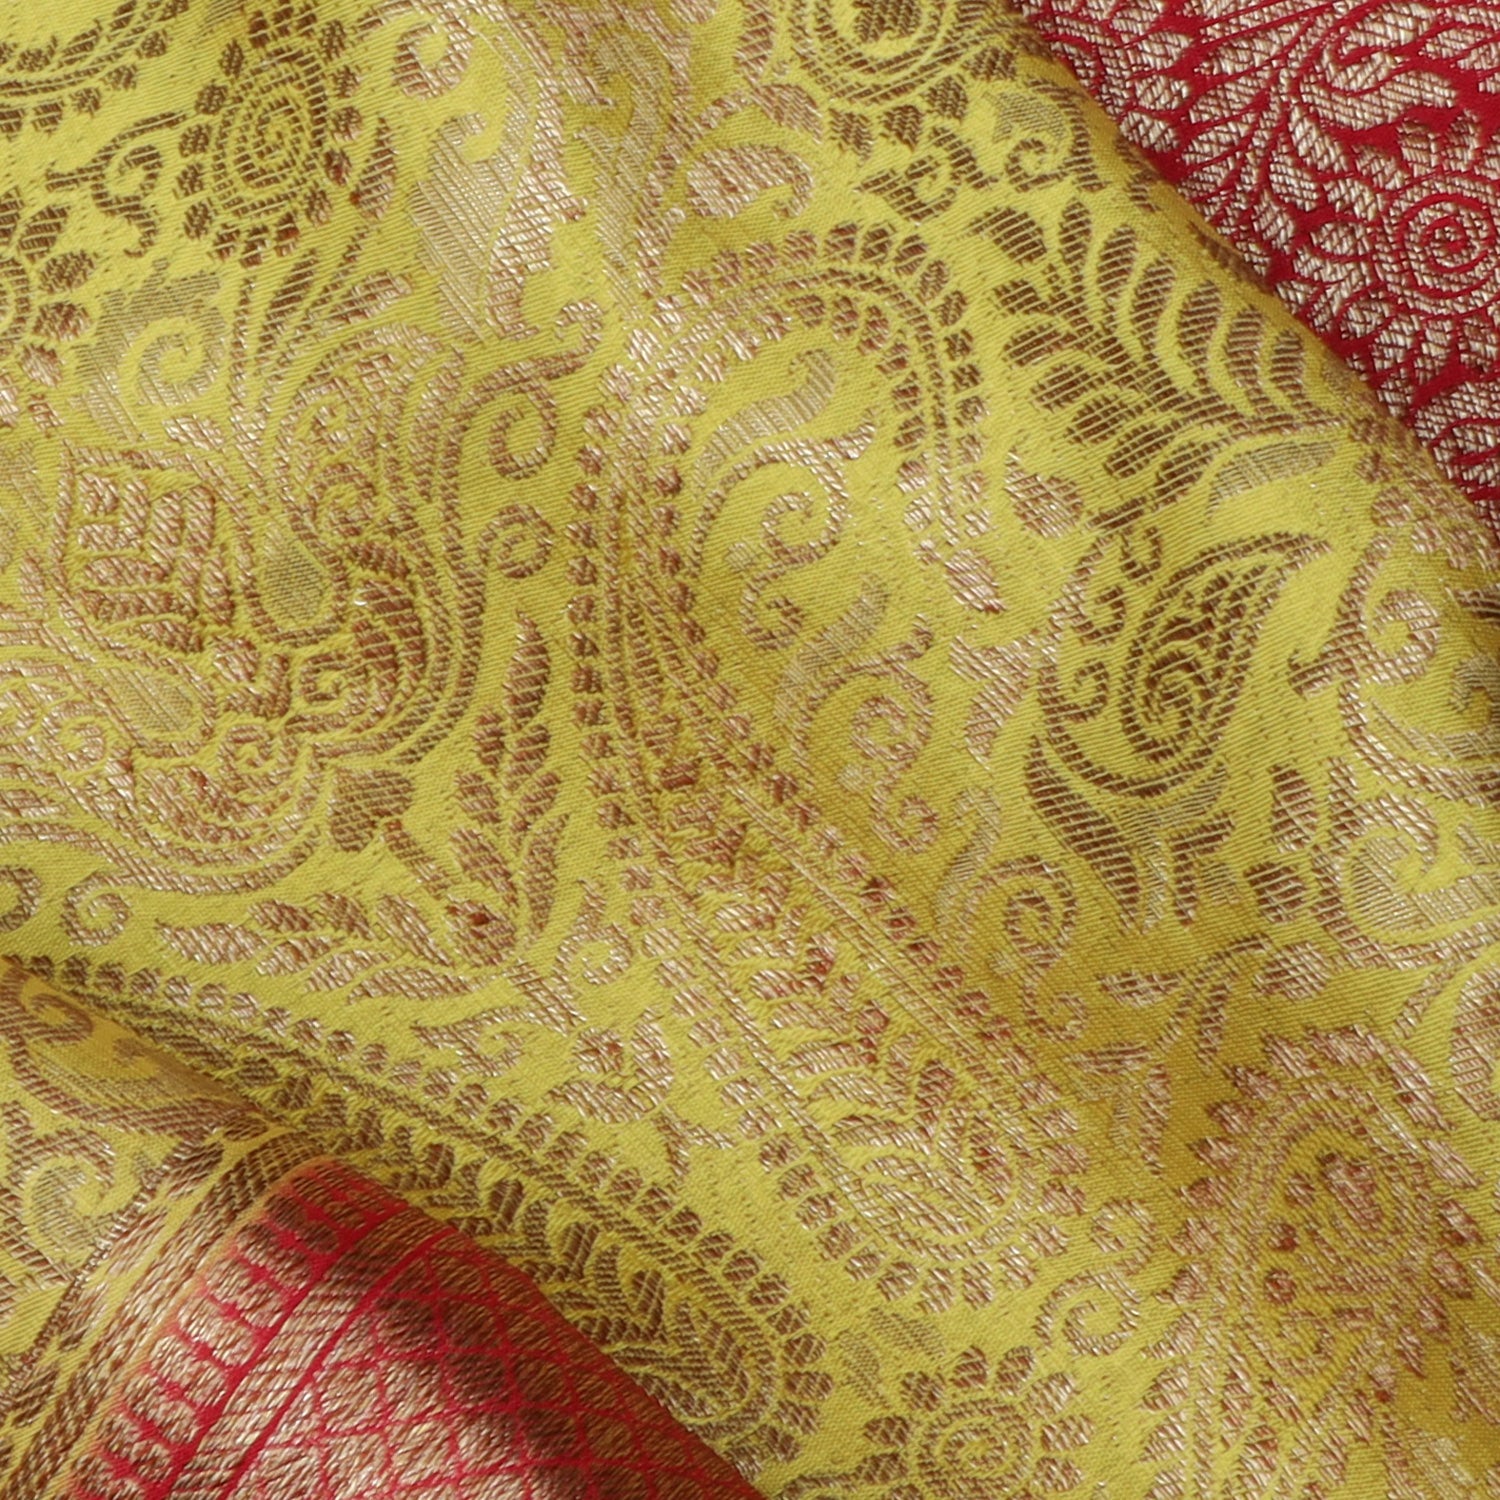 Corn Yellow Banarasi Silk Saree With Floral Pattern - Singhania's